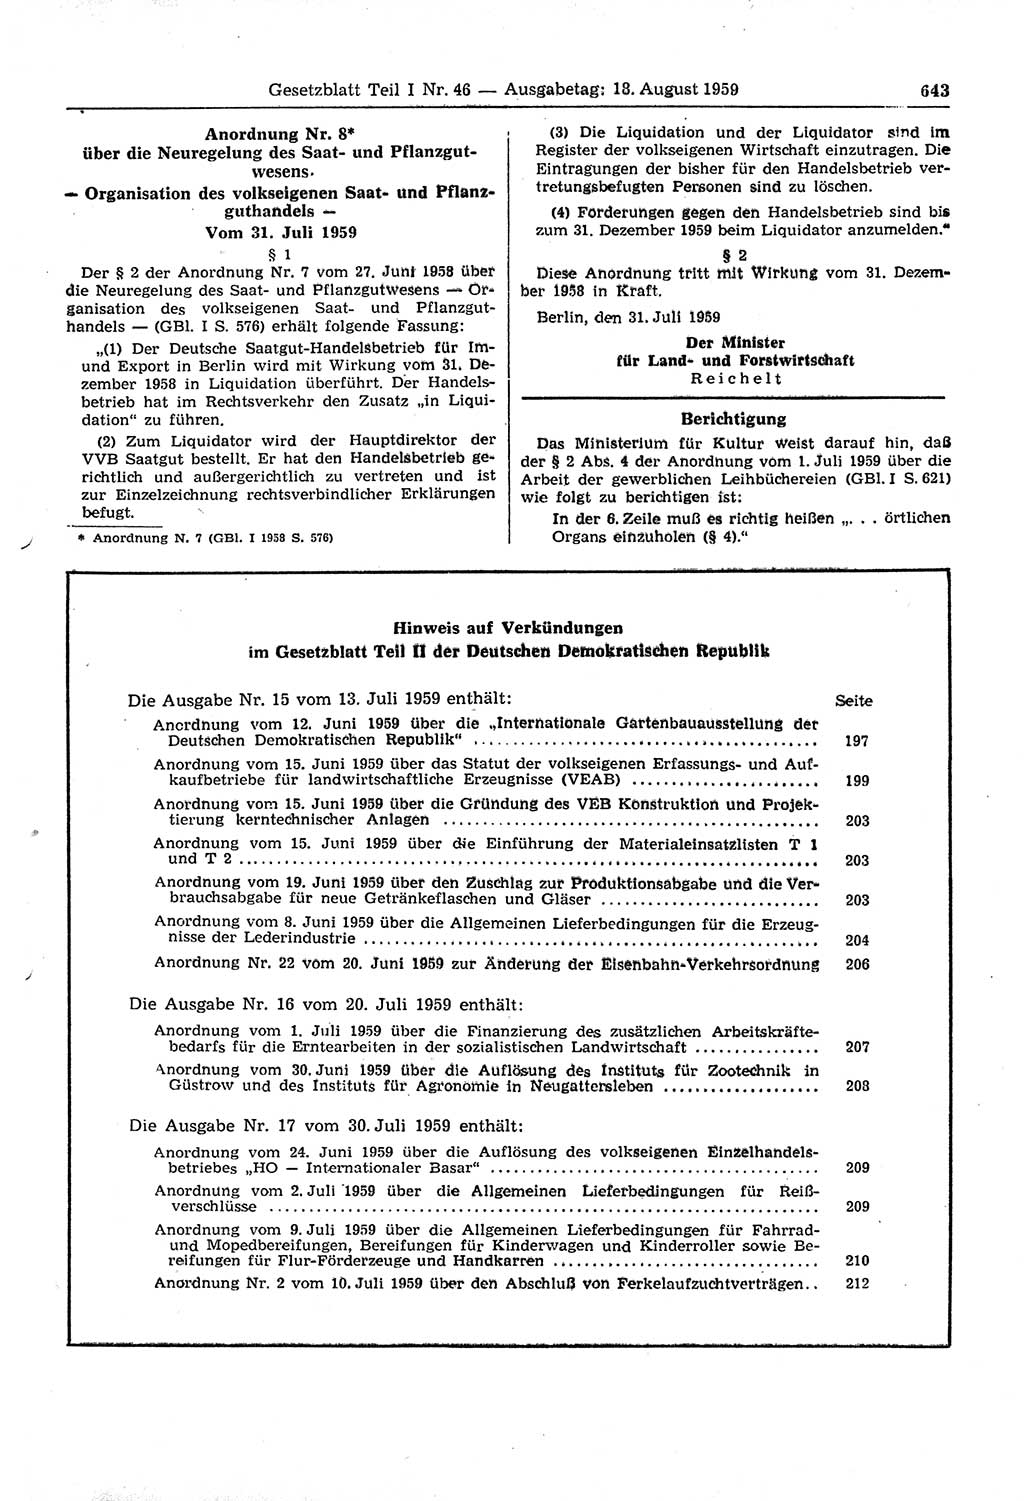 Gesetzblatt (GBl.) der Deutschen Demokratischen Republik (DDR) Teil Ⅰ 1959, Seite 643 (GBl. DDR Ⅰ 1959, S. 643)